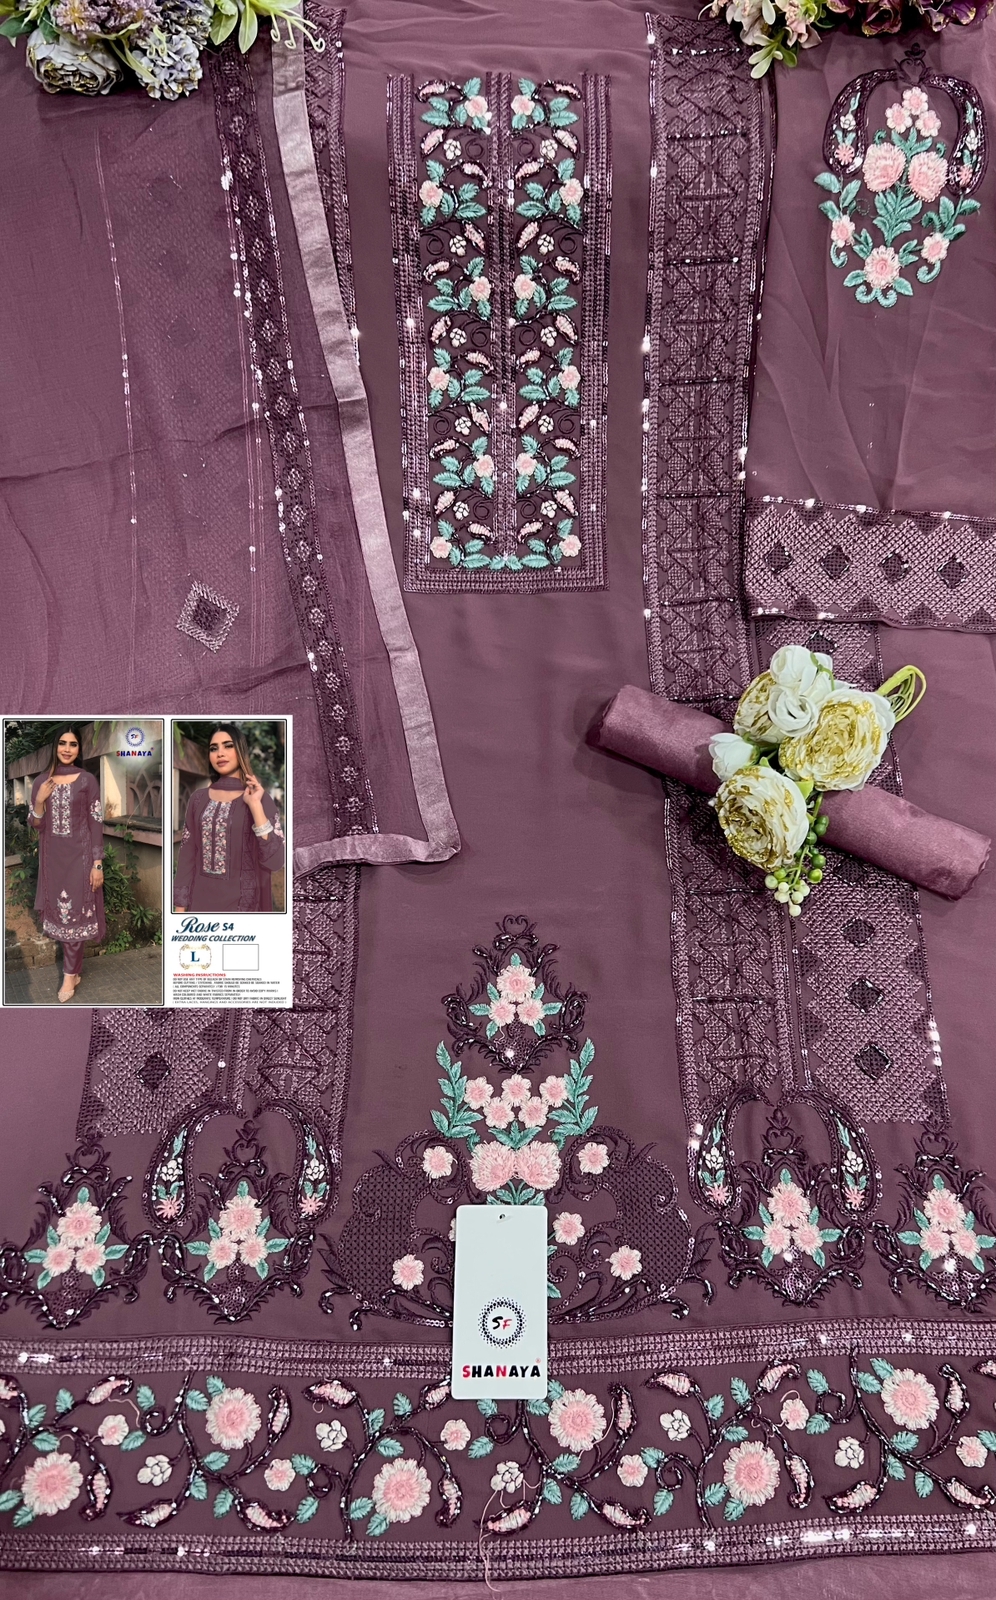 shanaya rose s4 wadding collction 3 georgette festive look salwar suit catalog